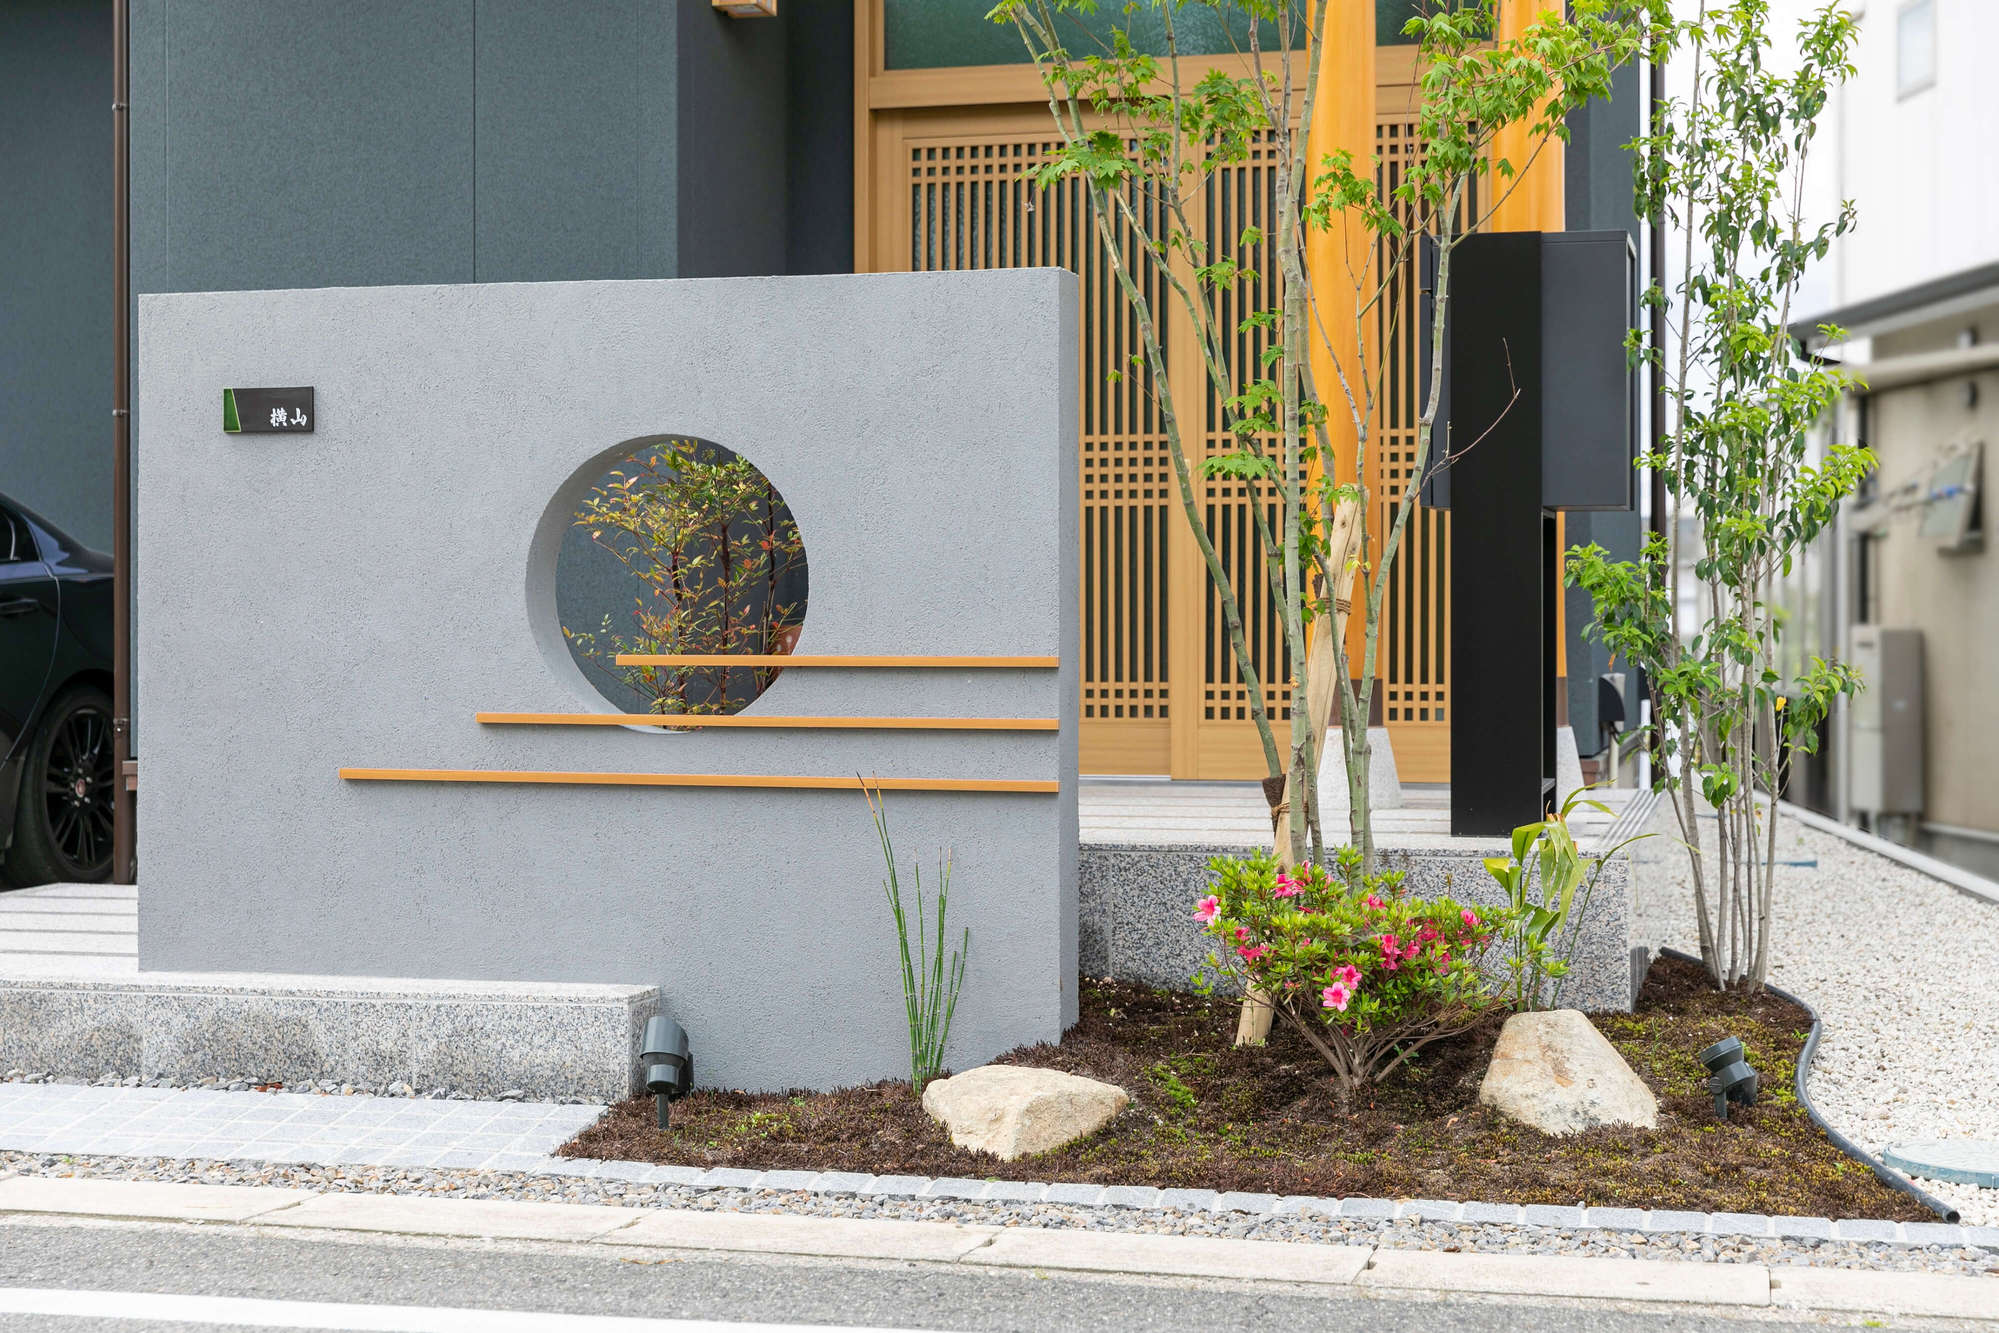 愛知県 刈谷市 和風 平屋 新築 新築外構 坪庭 和モダン おしゃれ かっこいい デザイン